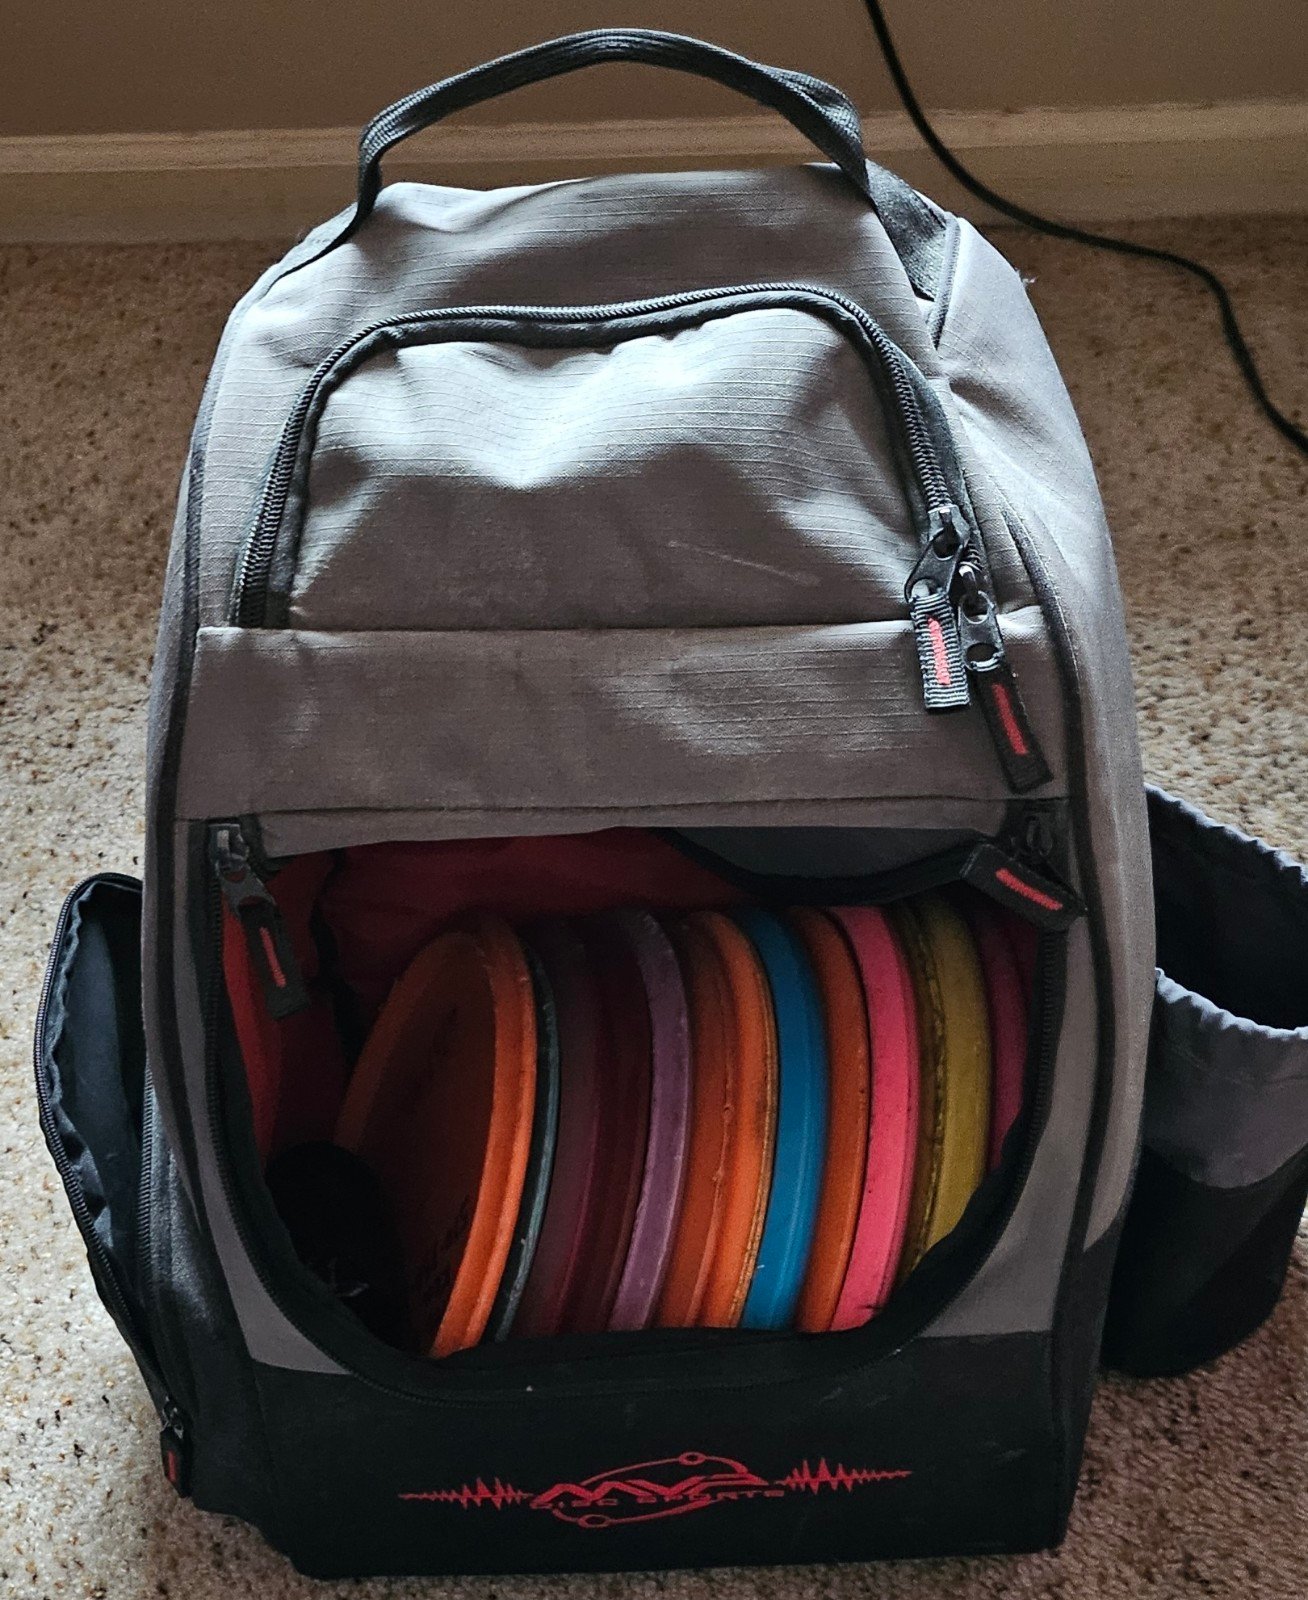 Disc Golf Bag,Discs and Range finder FccKnz3f3